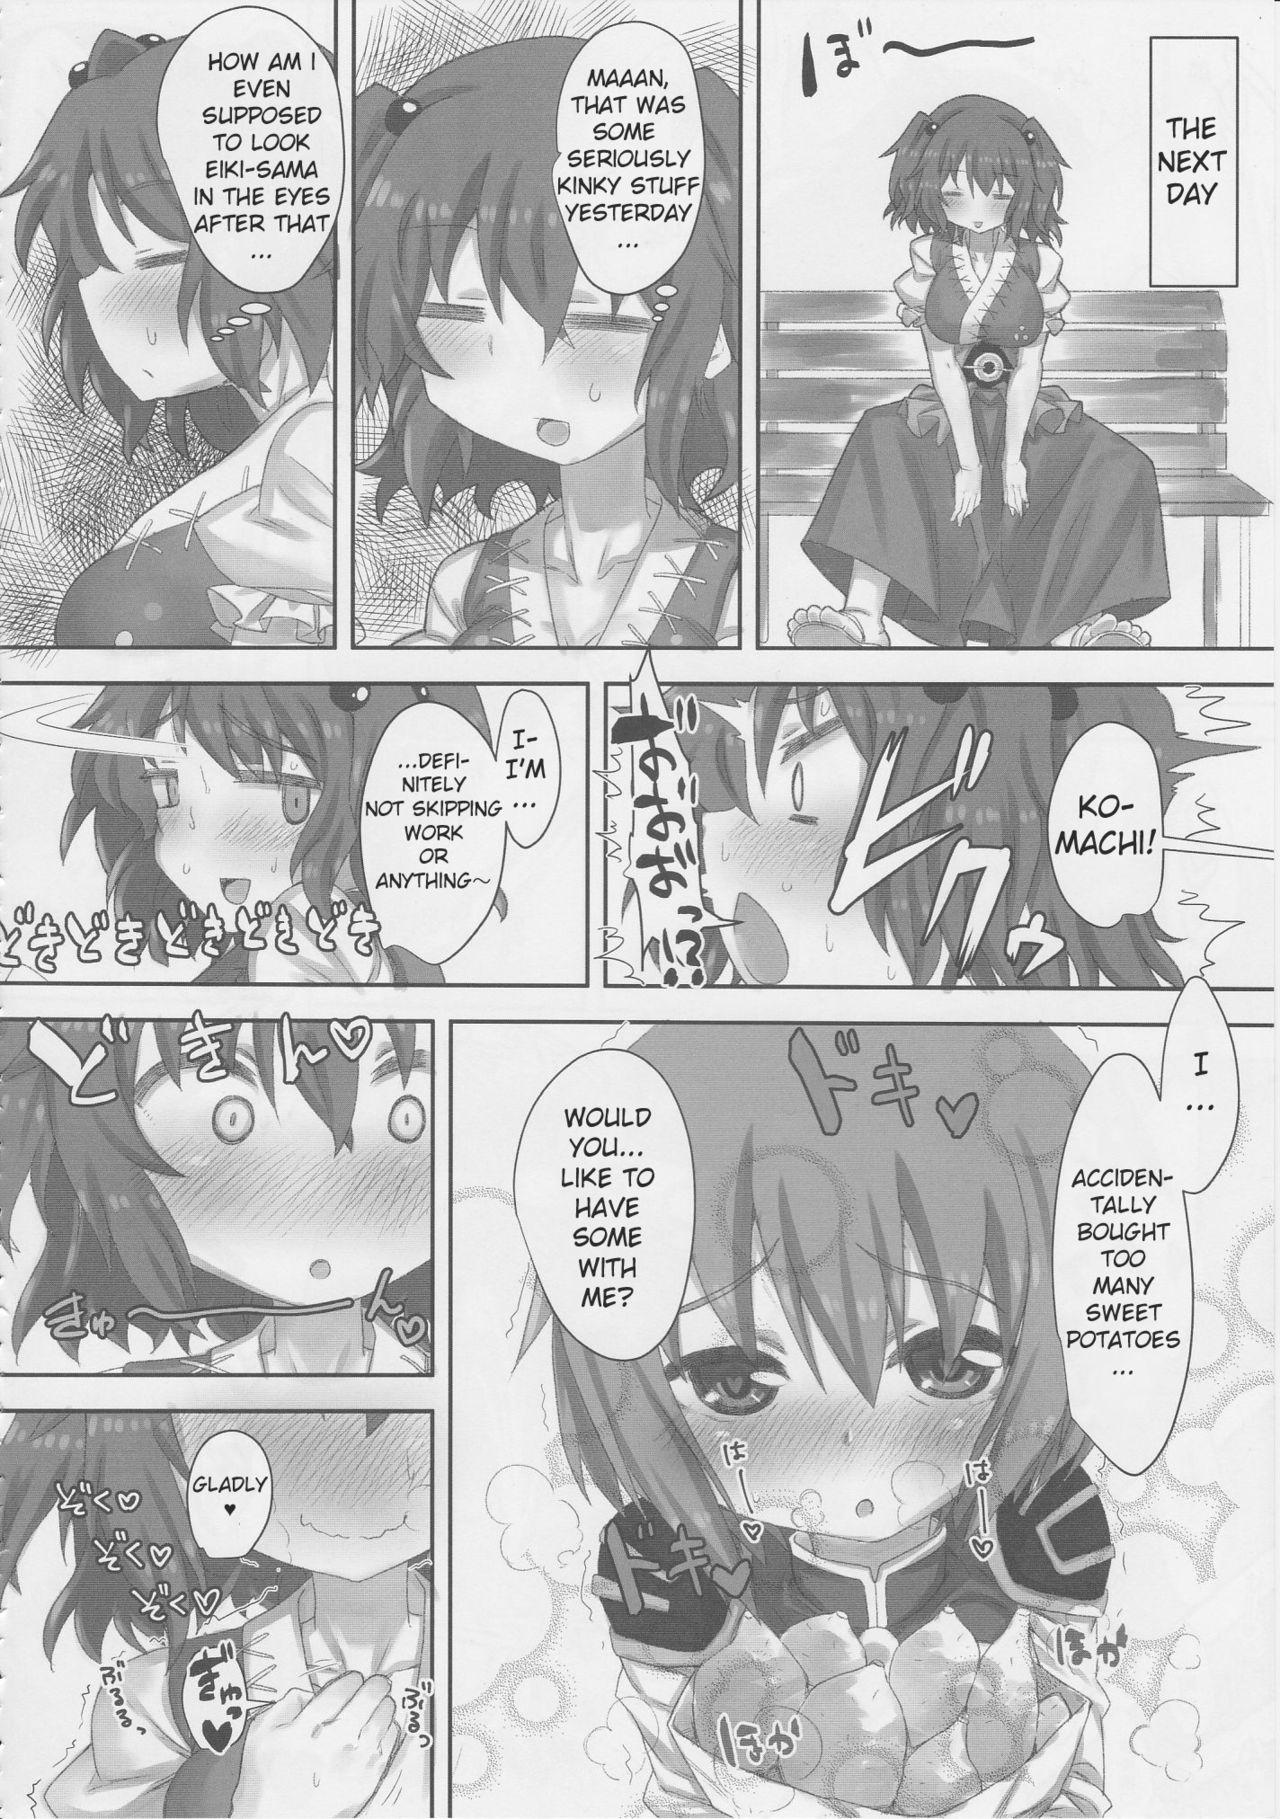 Pierced KomaEiki Gachi Yuri Onara Manga | A Koma-Eiki Yuri Fart Manga - Touhou project Twistys - Page 10